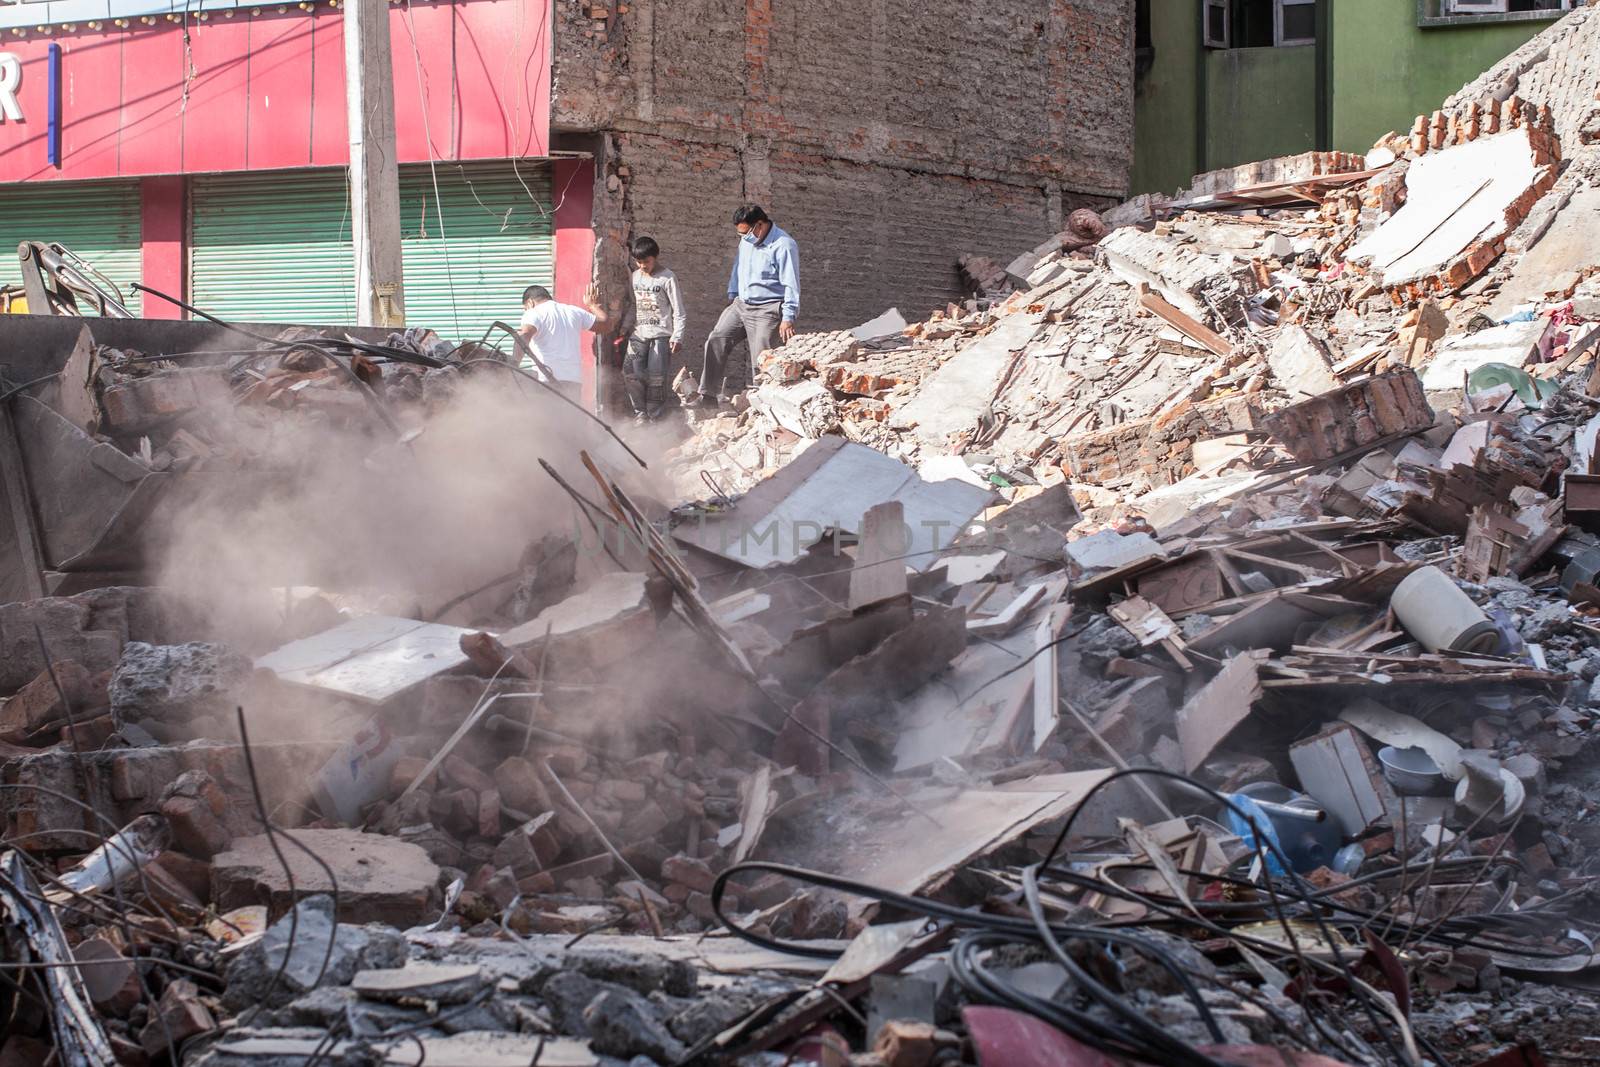 NEPAL-KATHMANDU-2015 EARTHQUAKE by newzulu